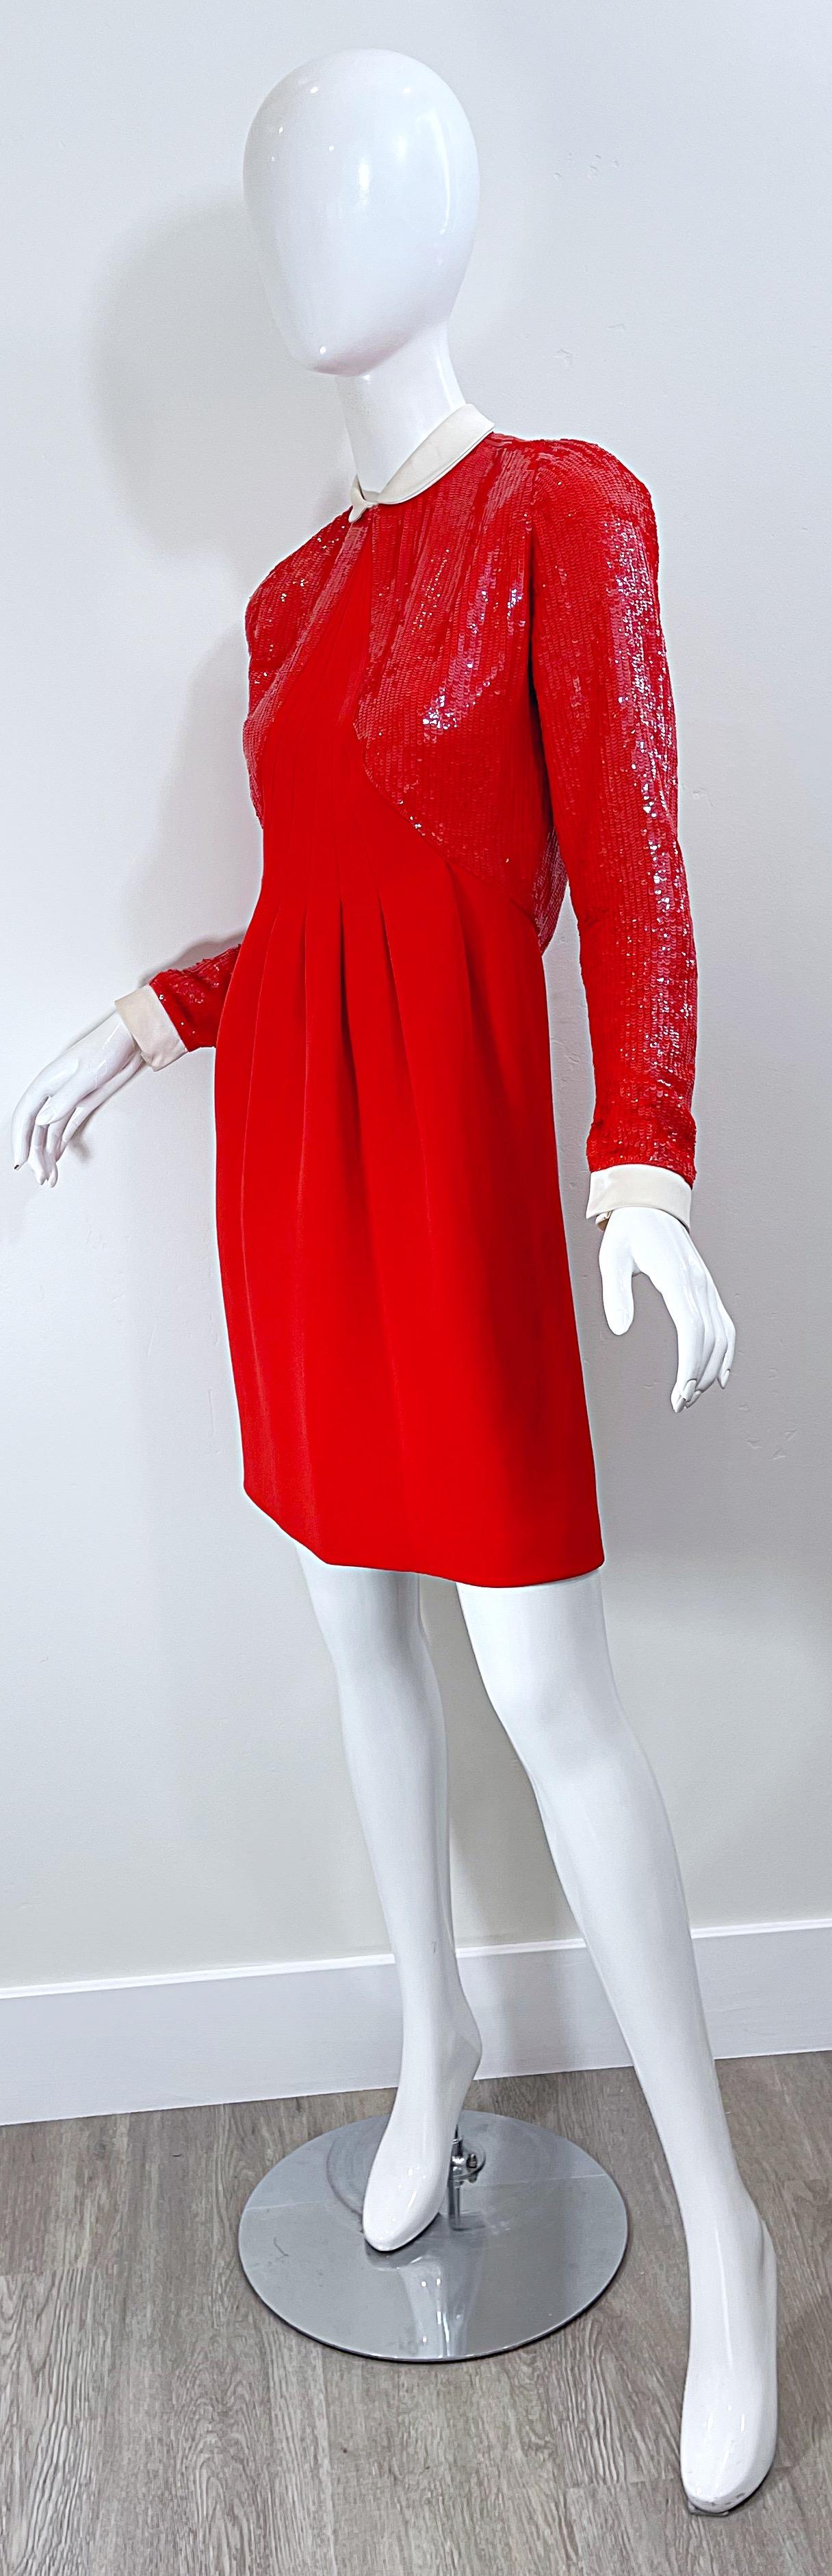 Geoffrey Beene 1980s Lipstick Red Faux Bolero Vintage 80s Tuxedo Dress  For Sale 1